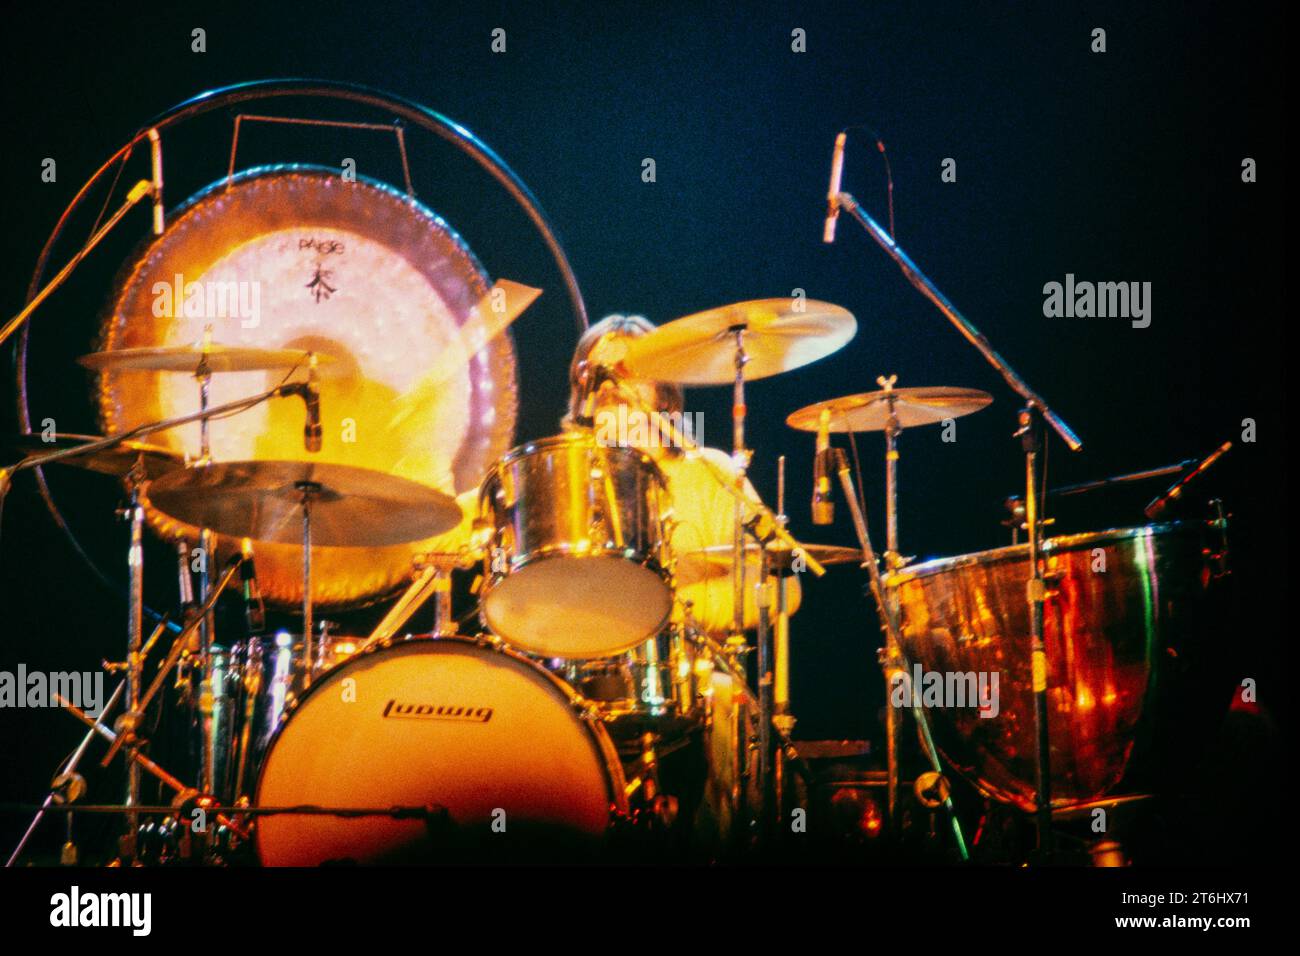 LED Zeppelin, ultimo concerto del tour europeo 1980, Berlino-Eissporthalle. L'ultimo concerto con il batterista John Bonham, morto poco dopo. Foto Stock